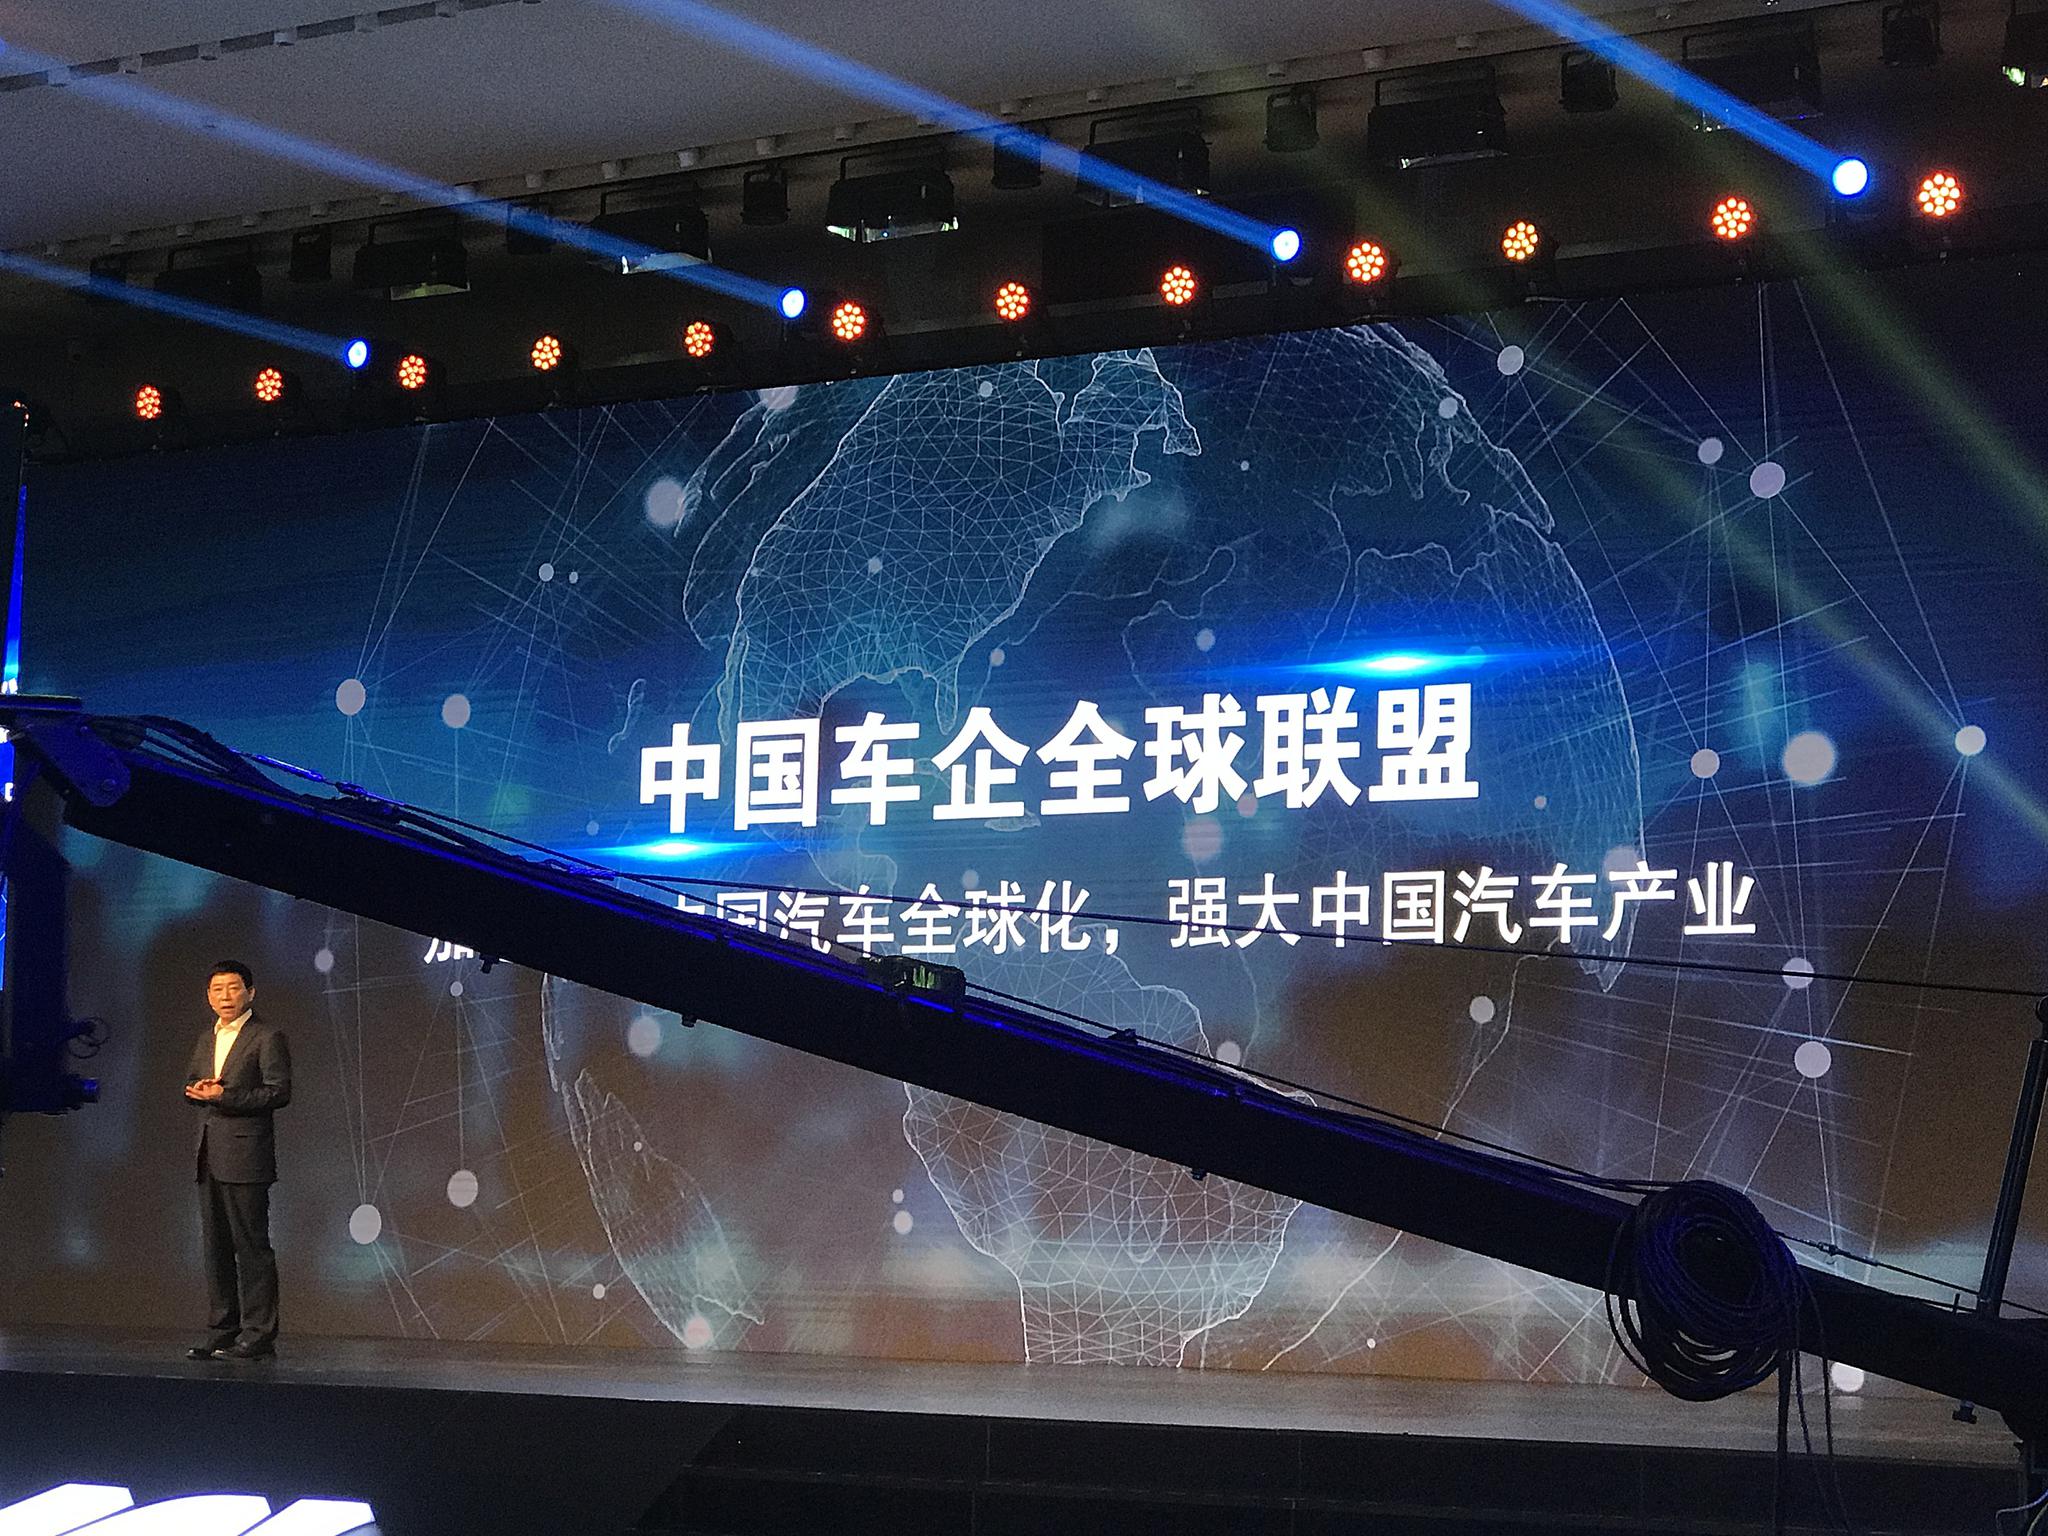 吉利副总裁杨学良积极回应长城中国车企全球联盟倡议